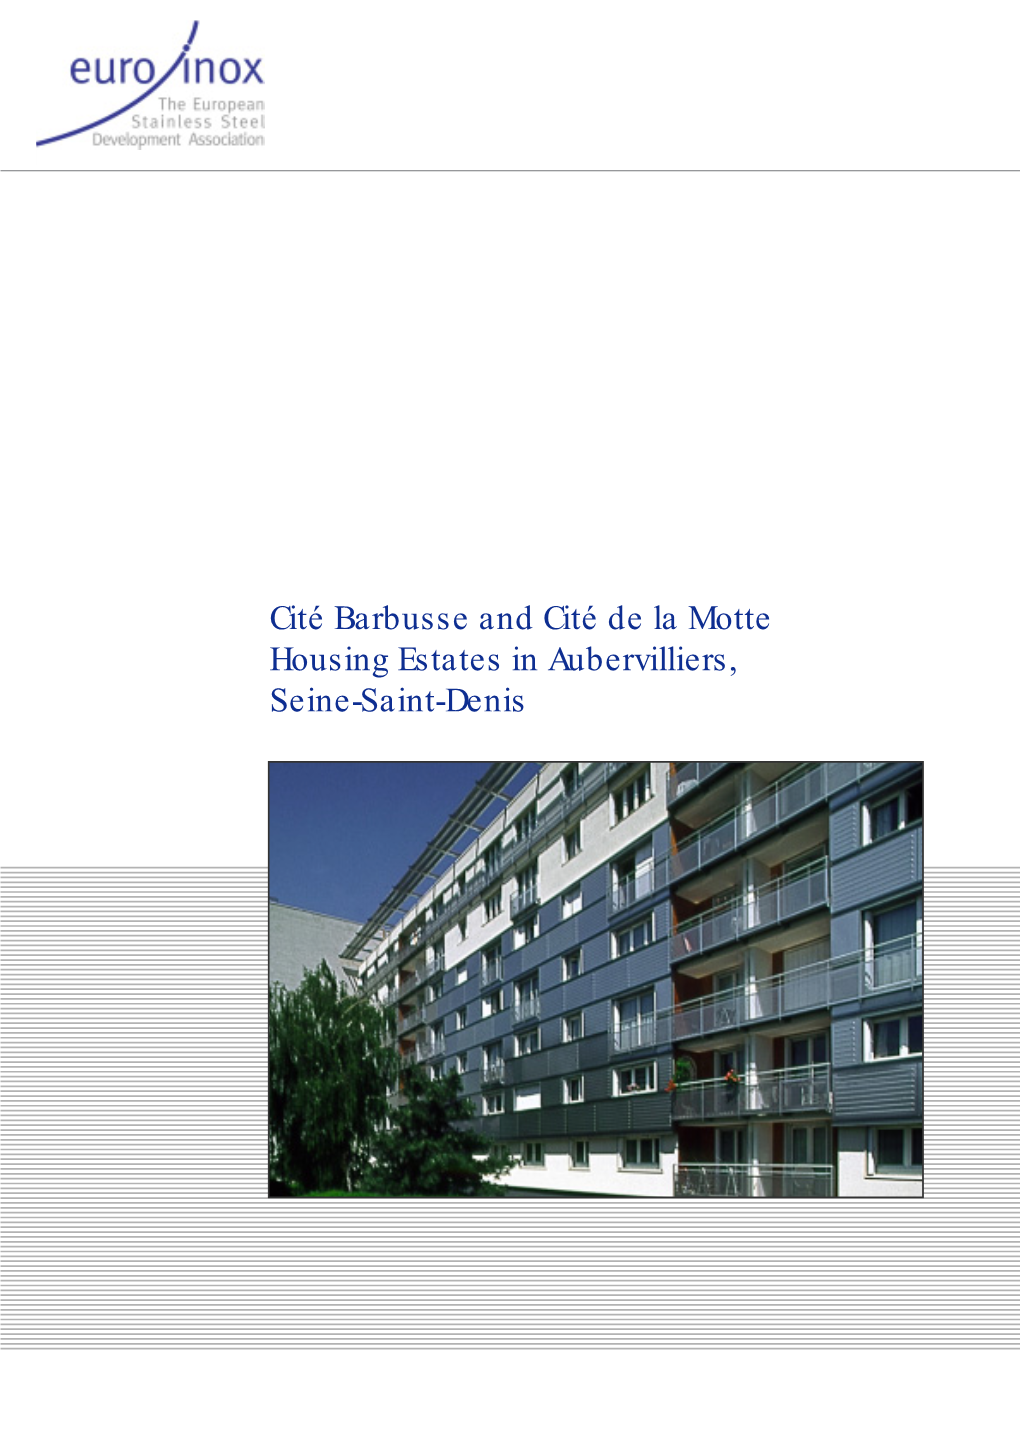 Cité Barbusse and Cité De La Motte Housing Estates in Aubervilliers, Seine-Saint-Denis CITÉ BARBUSSE and CITÉ DE LA MOTTE HOUSING ESTATES